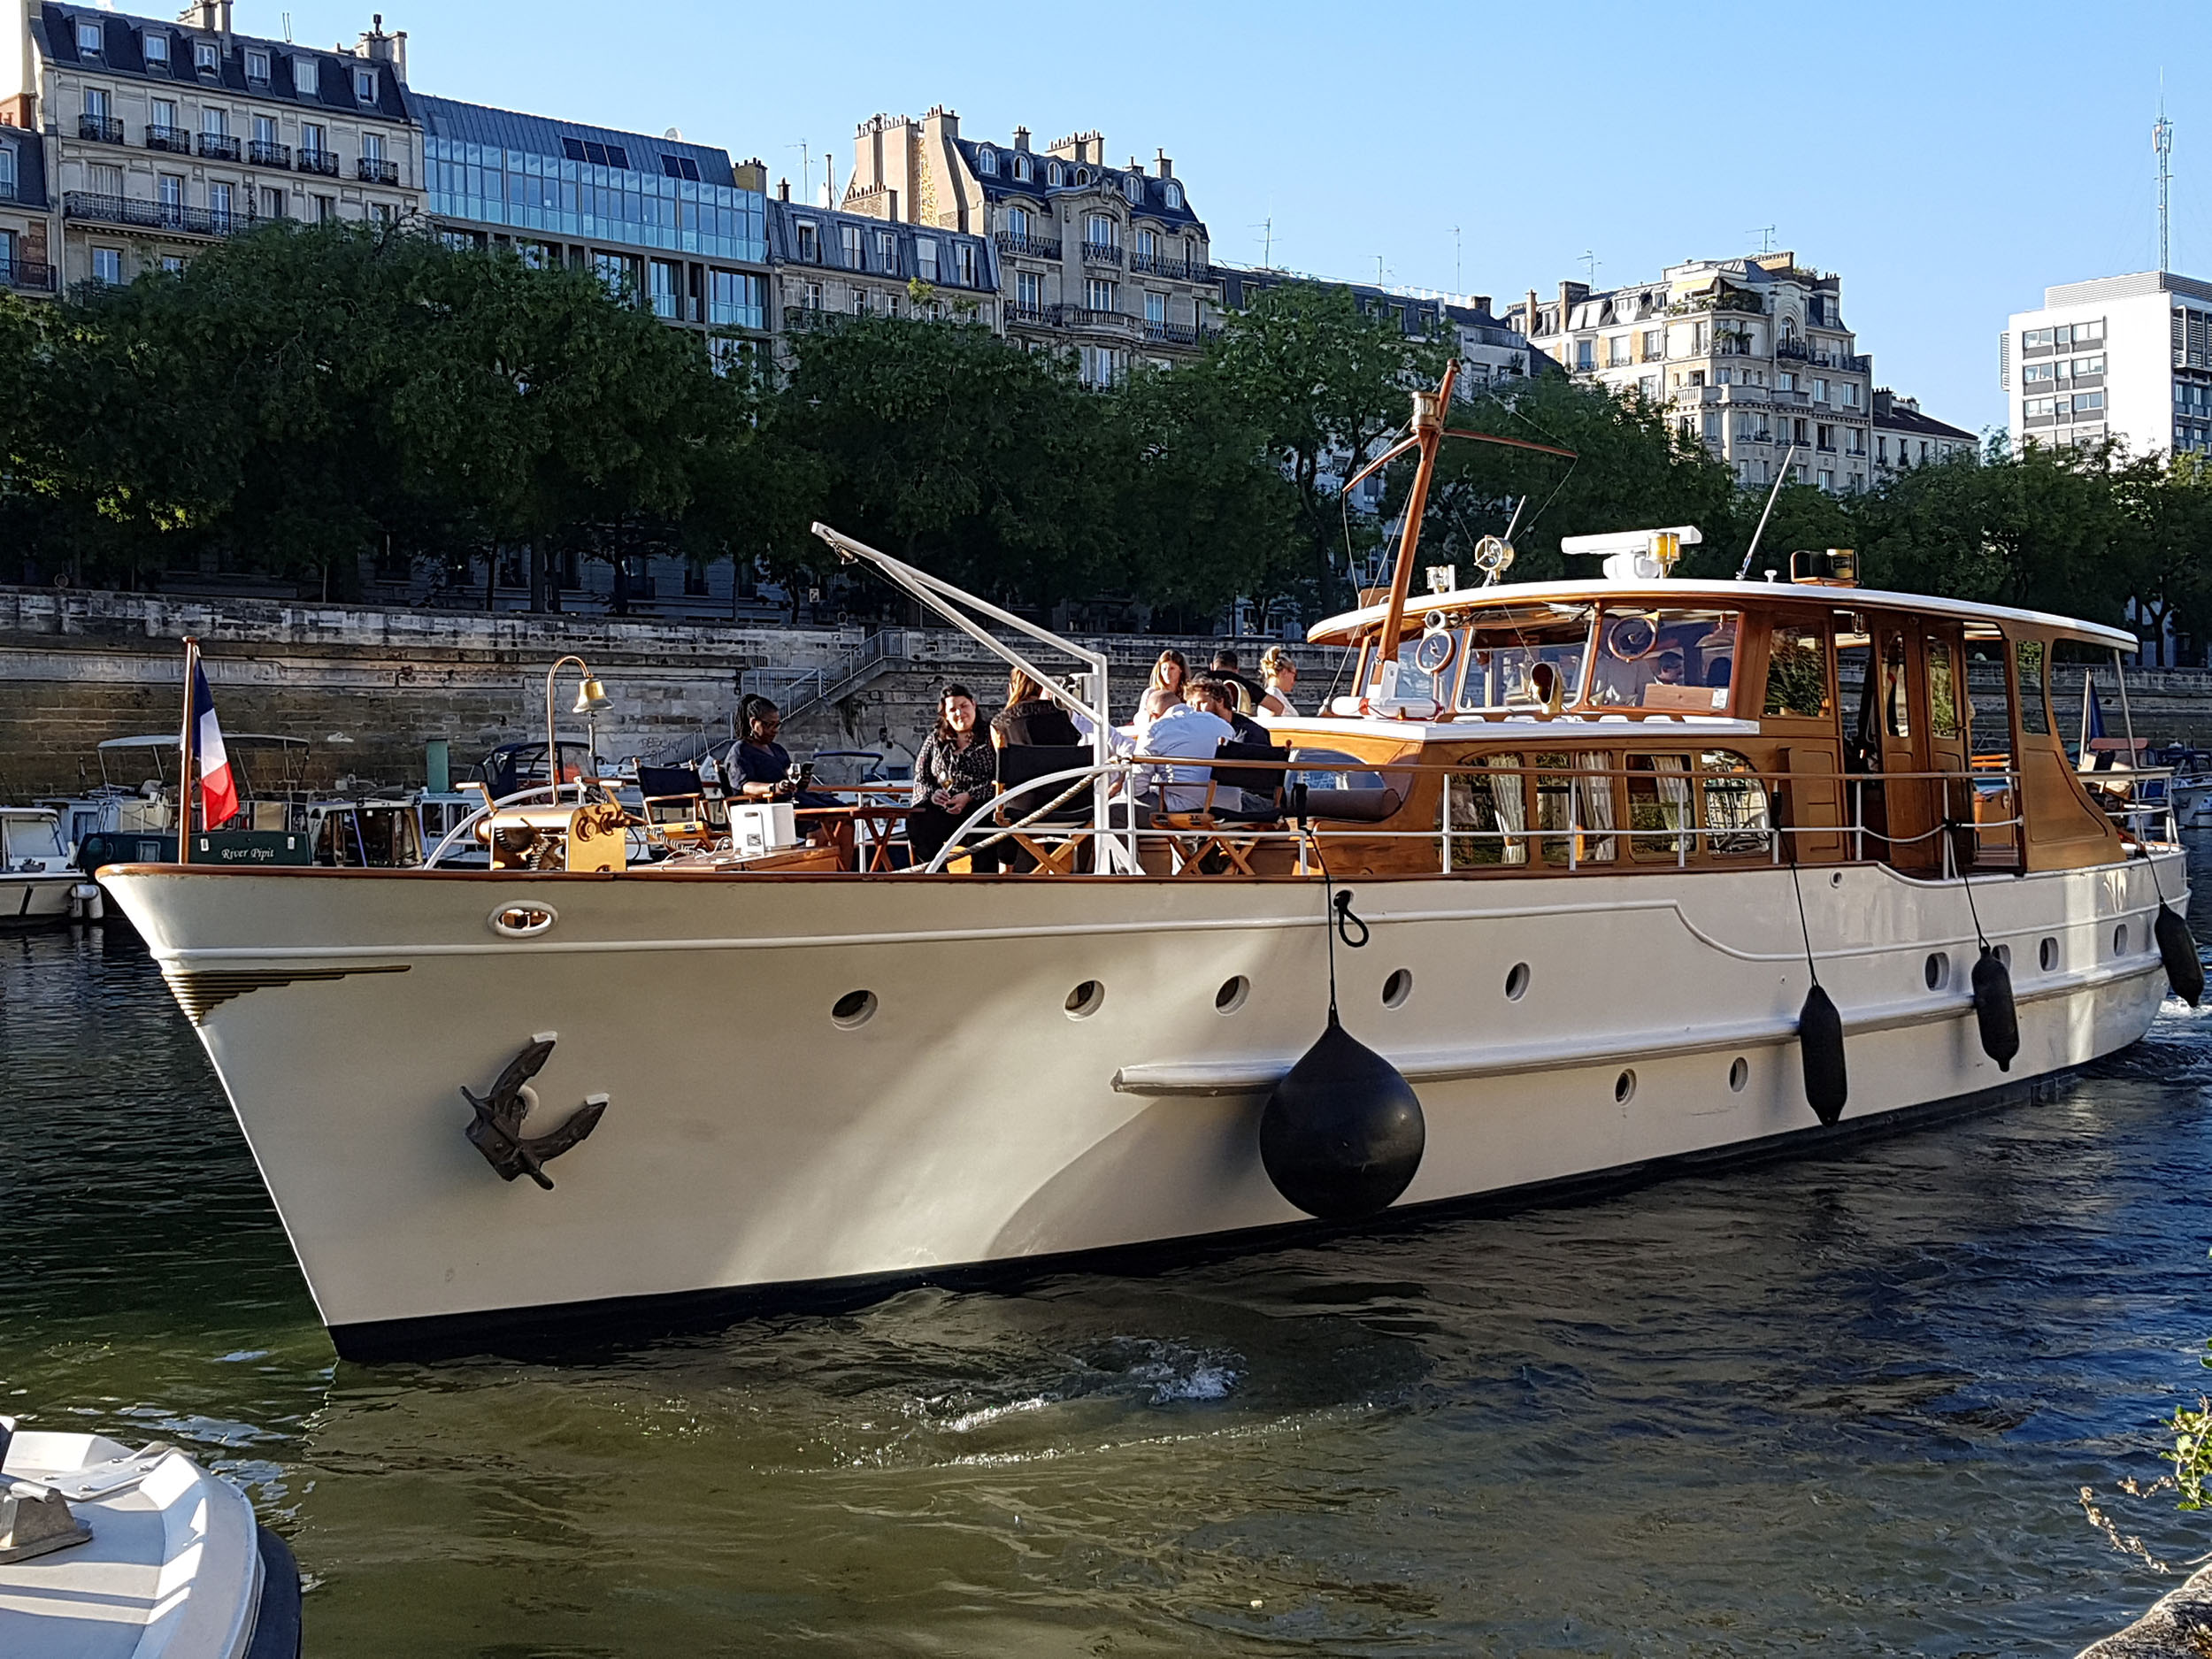 Dutch Motor Yacht, un des plus beaux yachts de la Seine à Paris